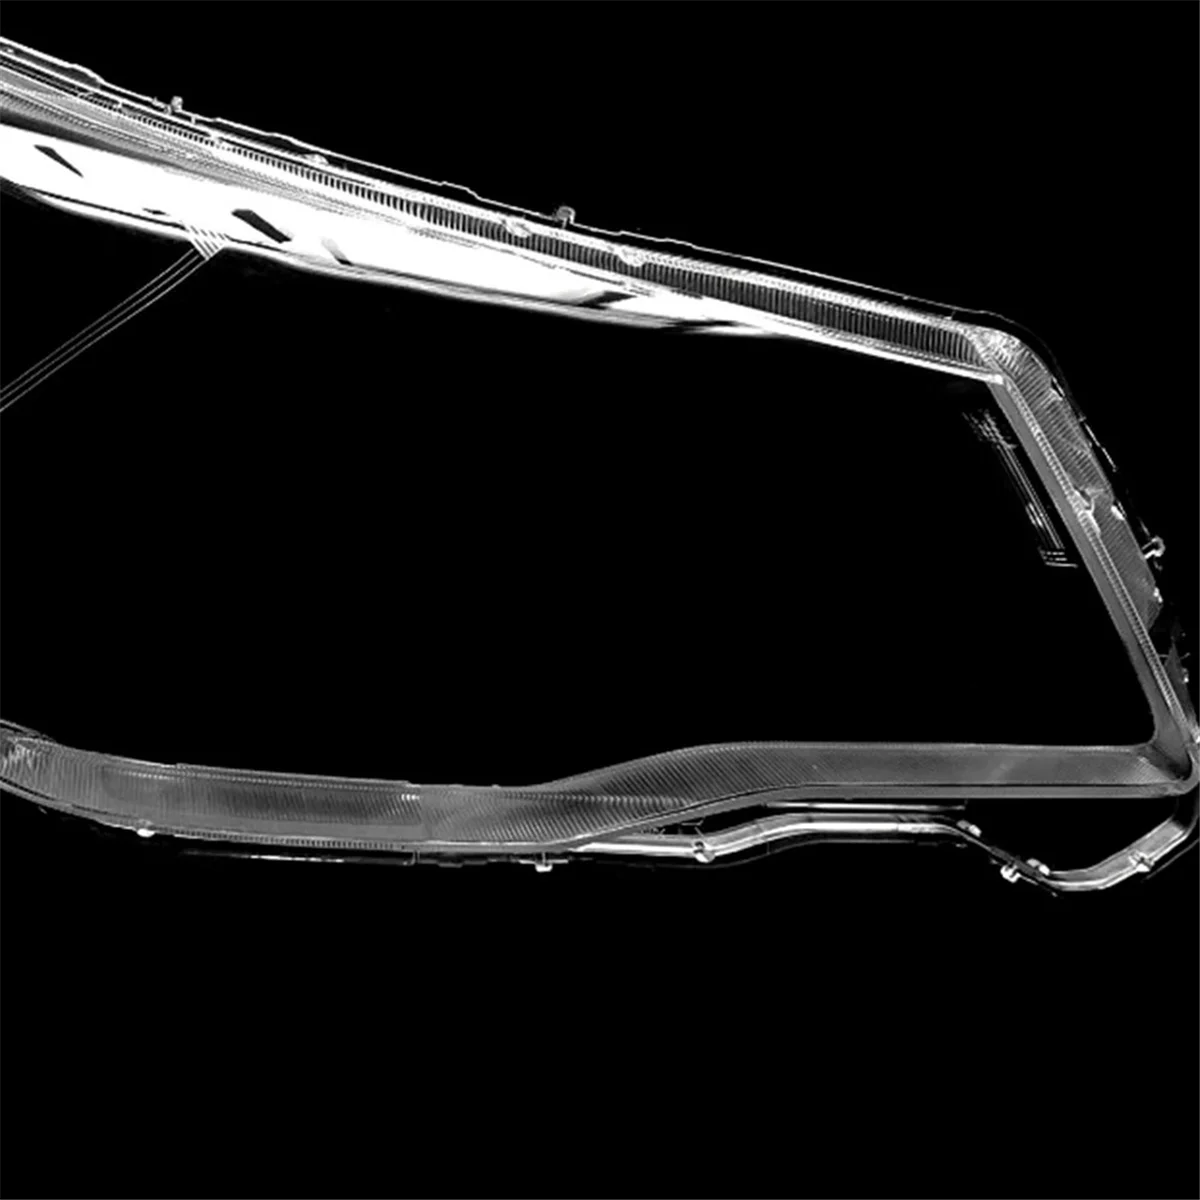 Крышка левой фары головного света автомобиля, объектив лампы для Subaru Forester 2013-2018, Абажур фары, Автомобильные аксессуары - 3